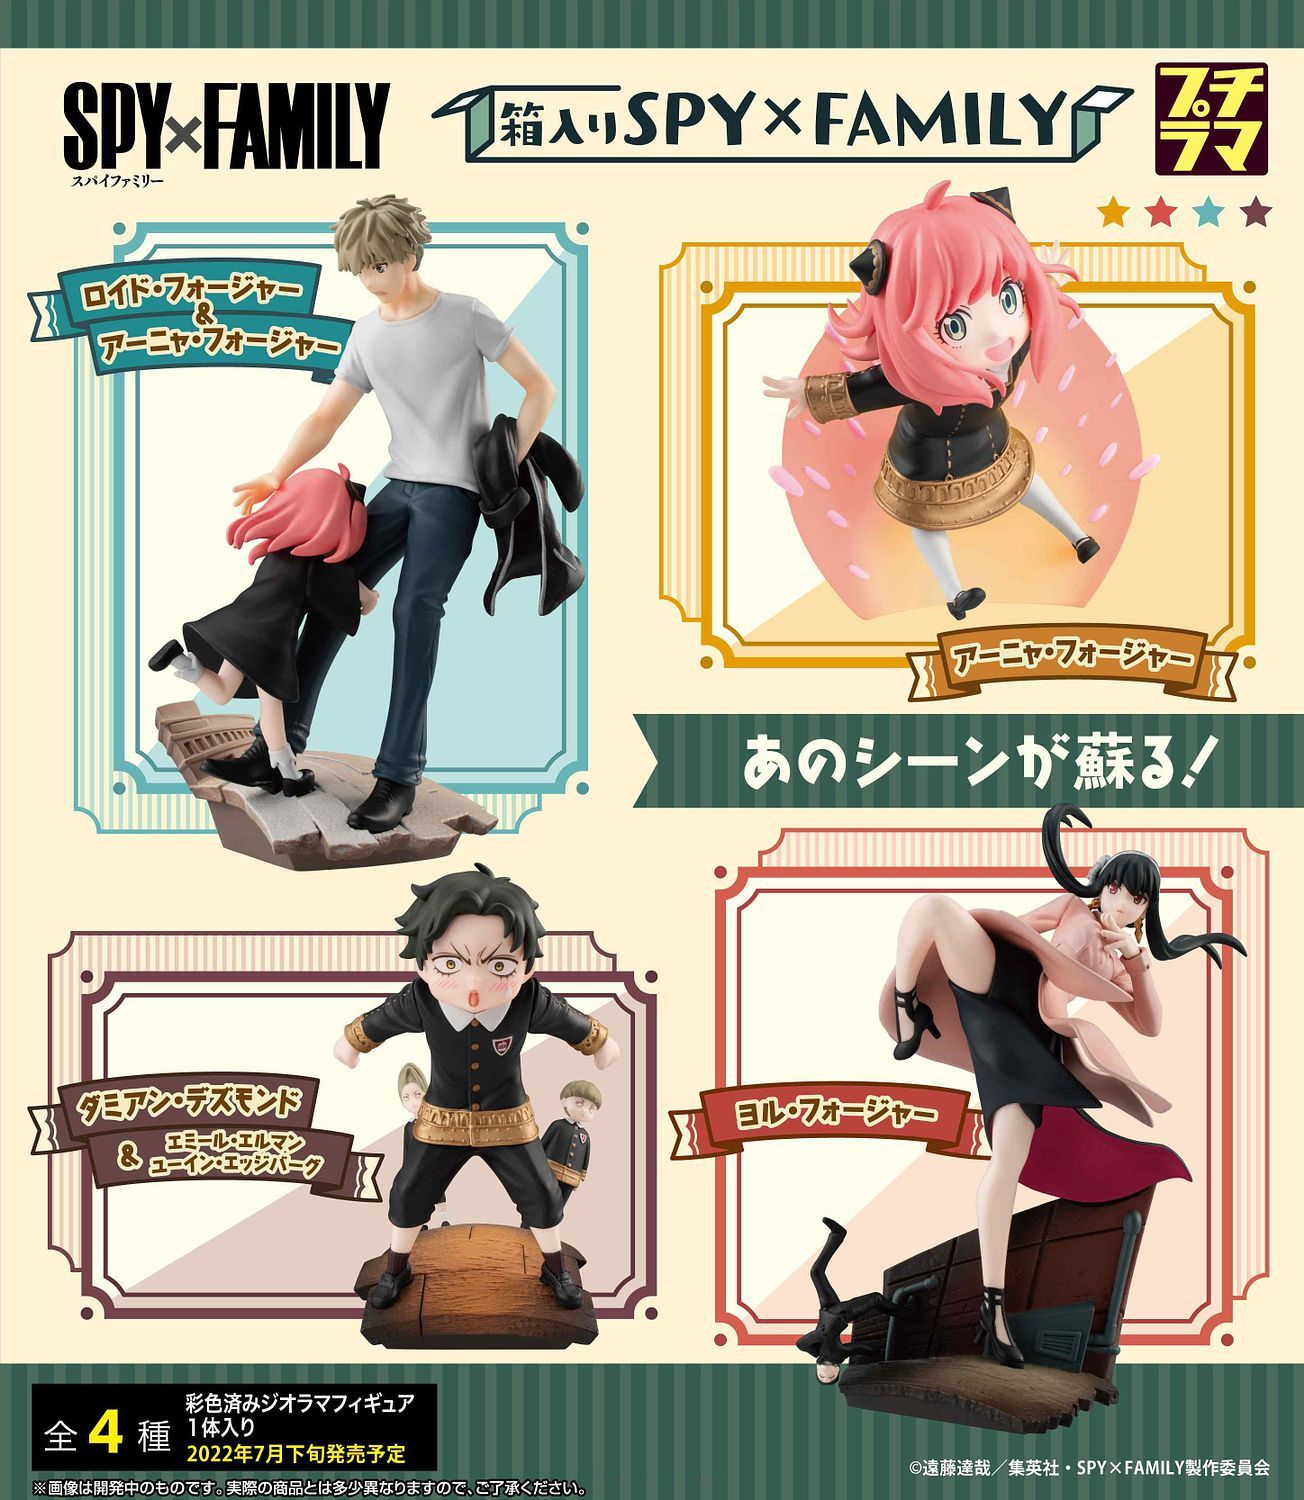 MegaHouse Petitrama SPY x FAMILY in the Box 2 (Box of 4), SPY x FAMILY